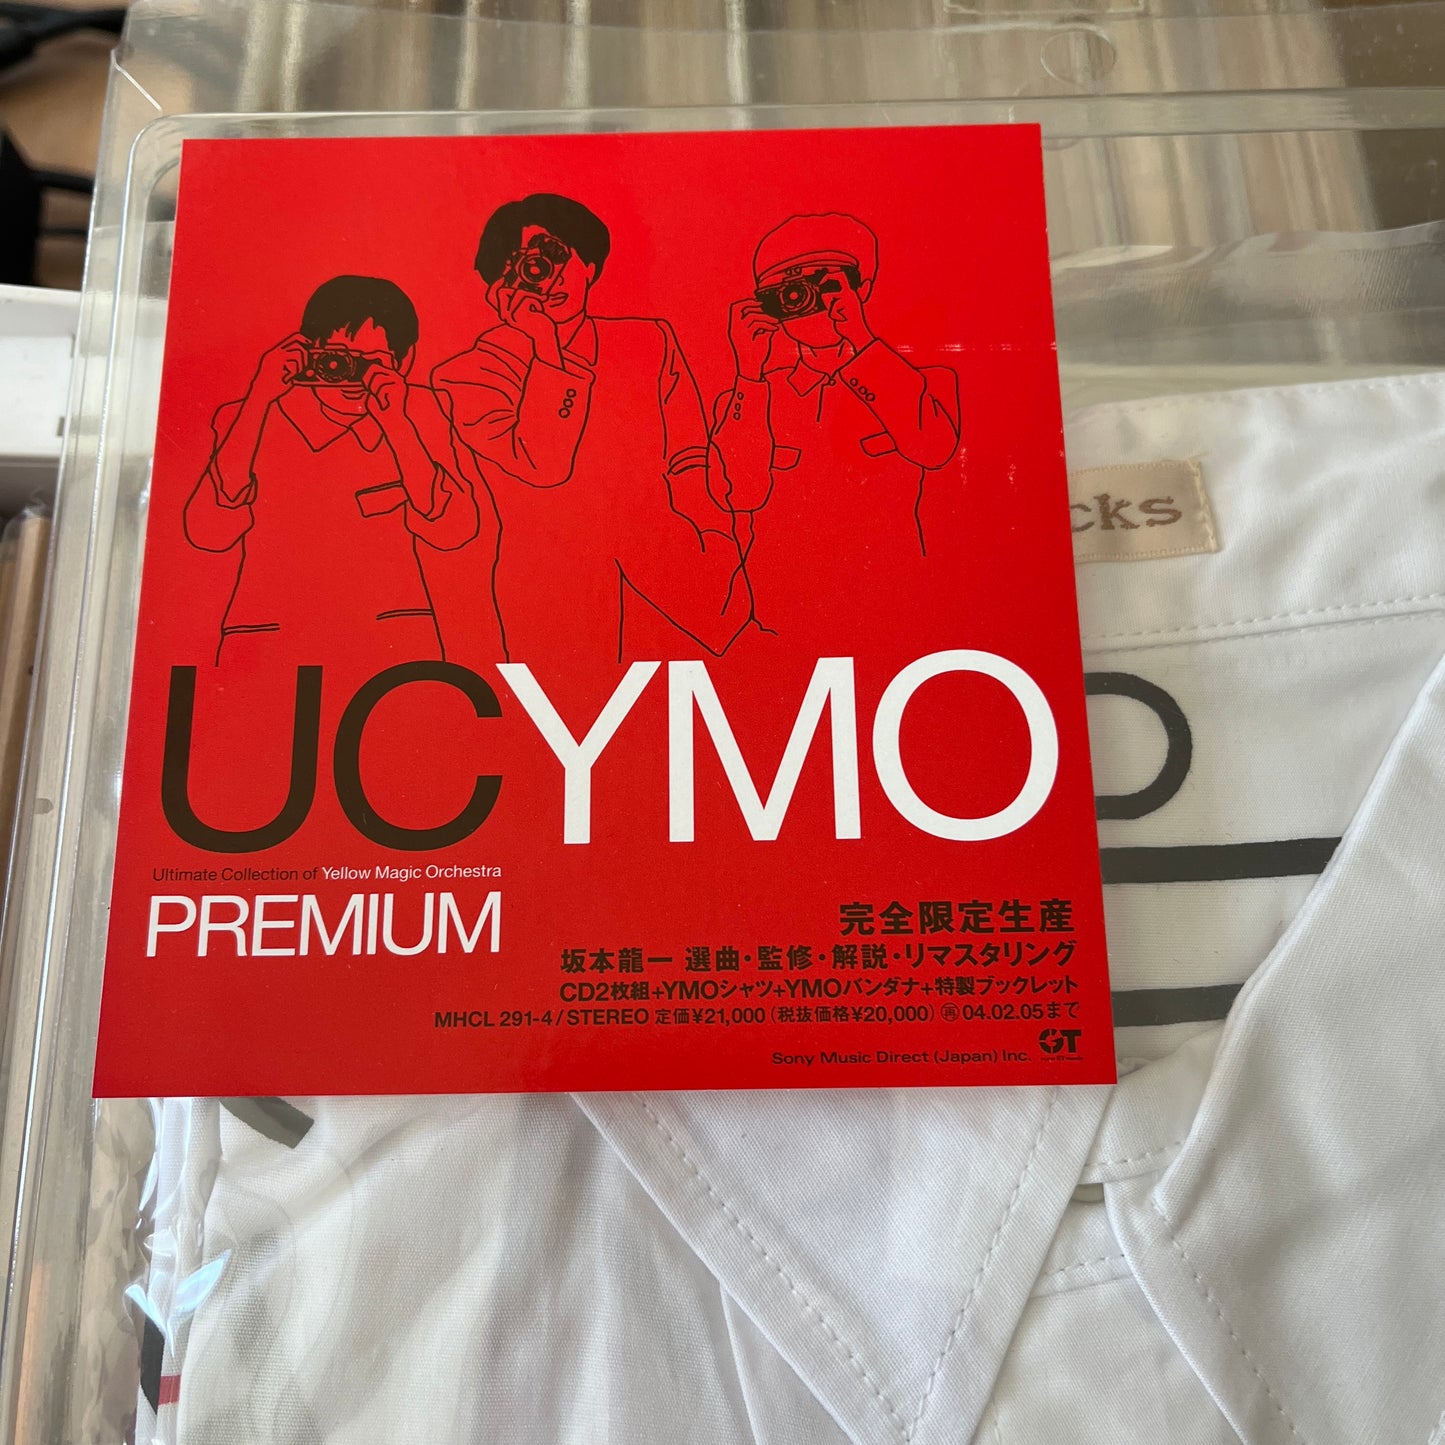 限定版】UC YMO PREMIUM シャツ バンダナ未開封 - 邦楽